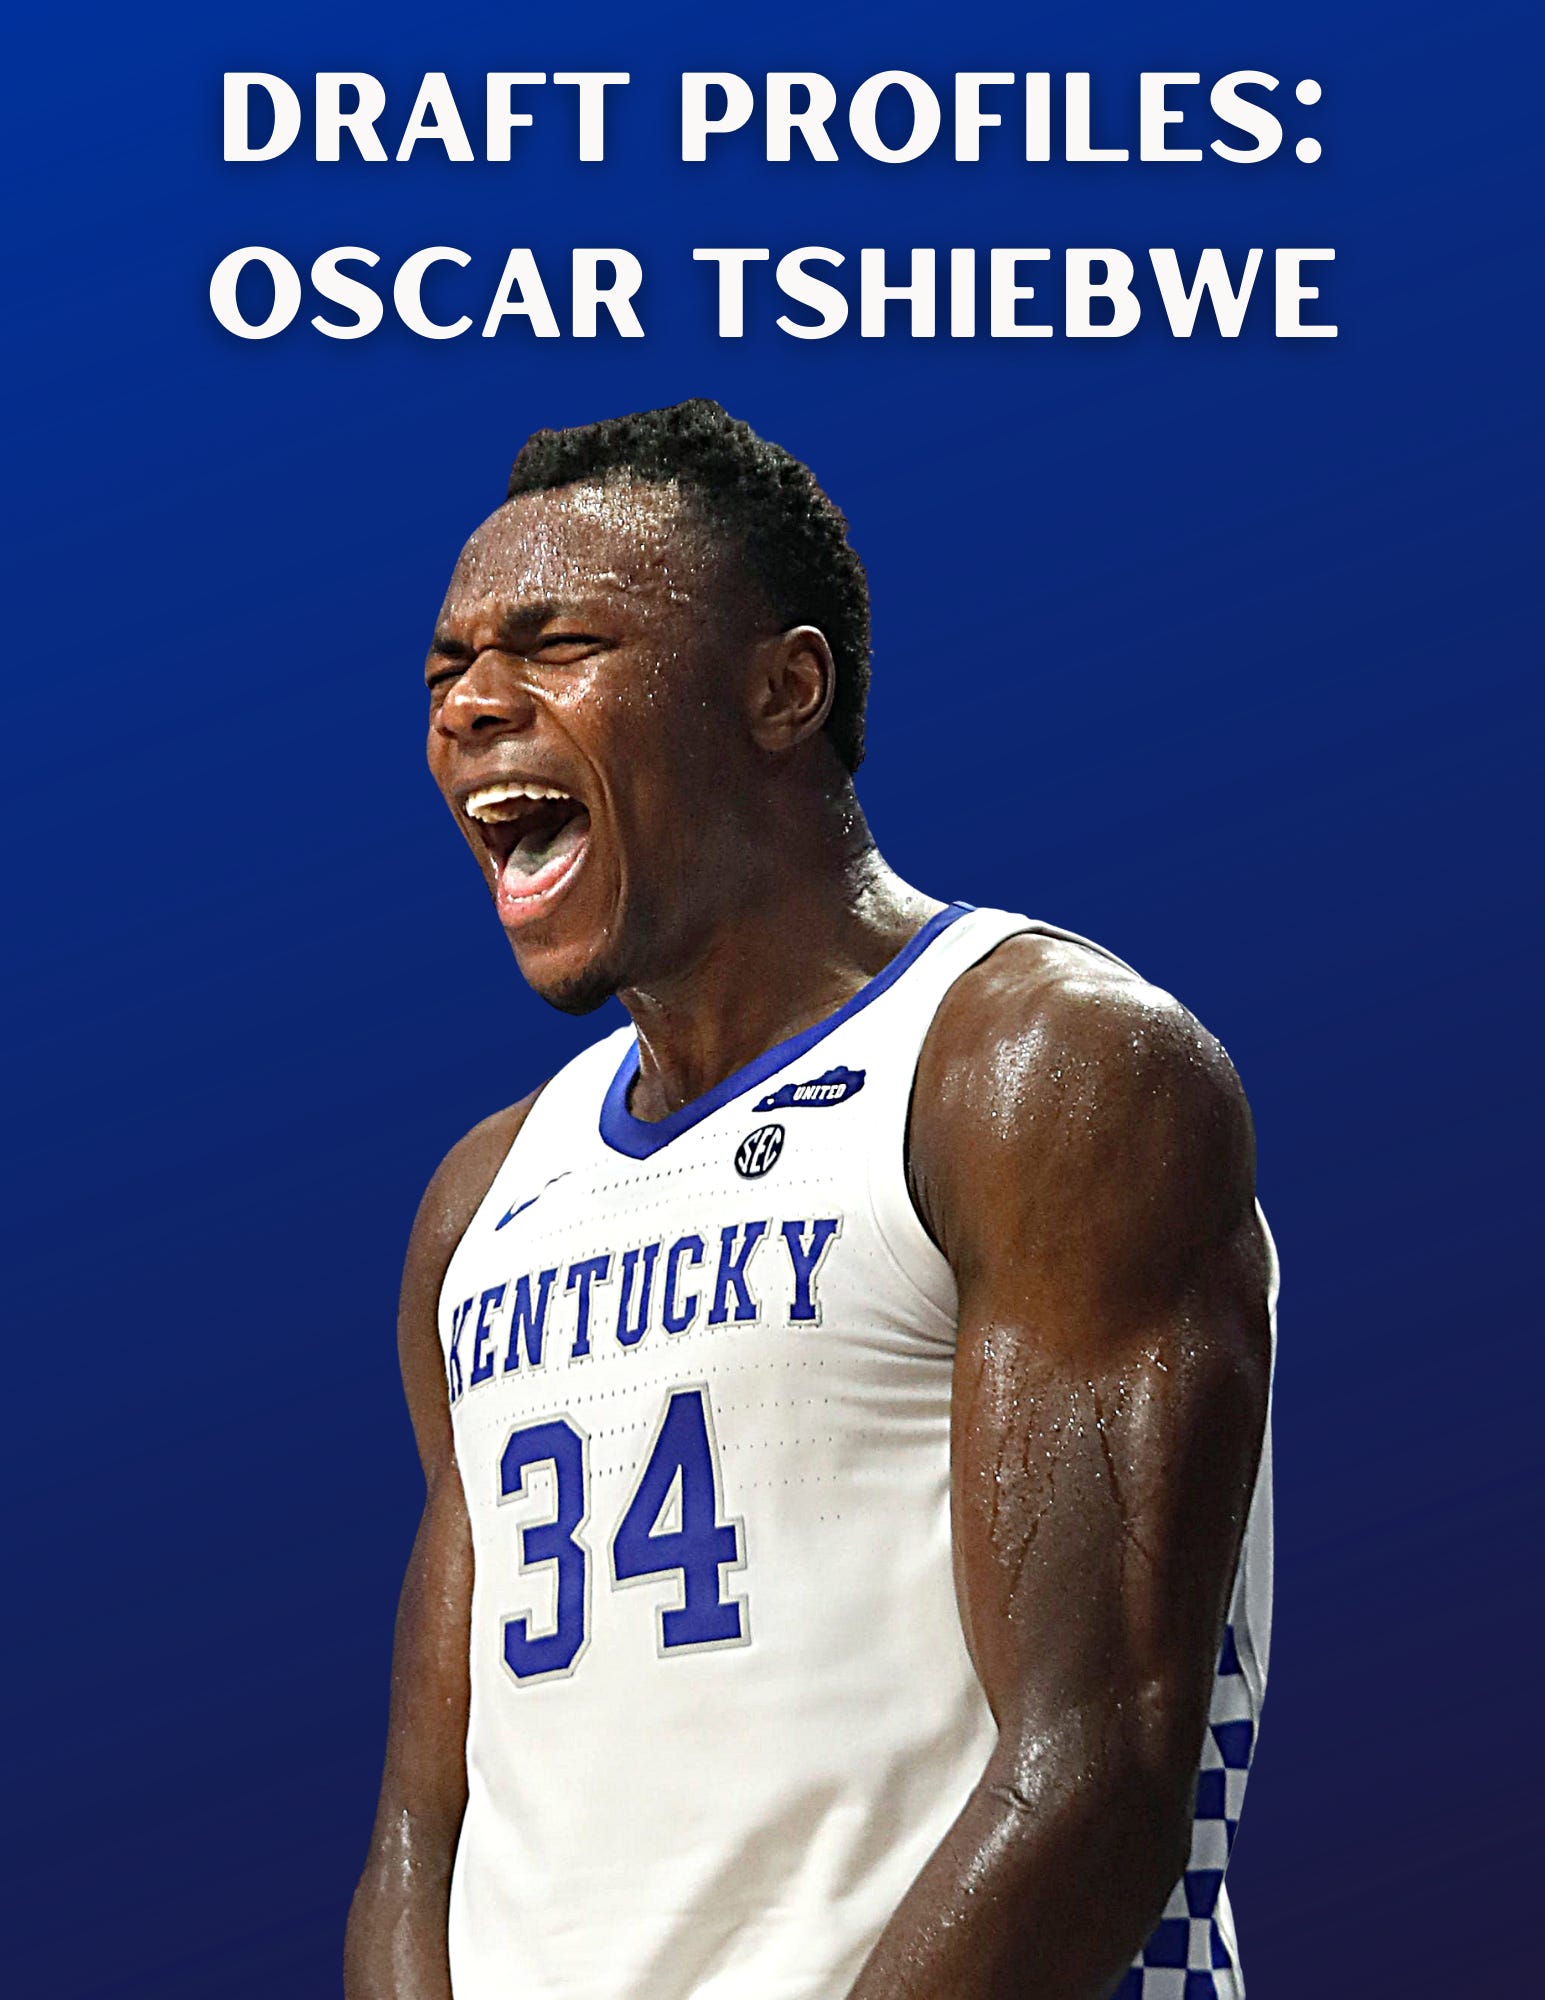 Draft Profiles: Oscar Tshiebwe - by Stephen Gillaspie